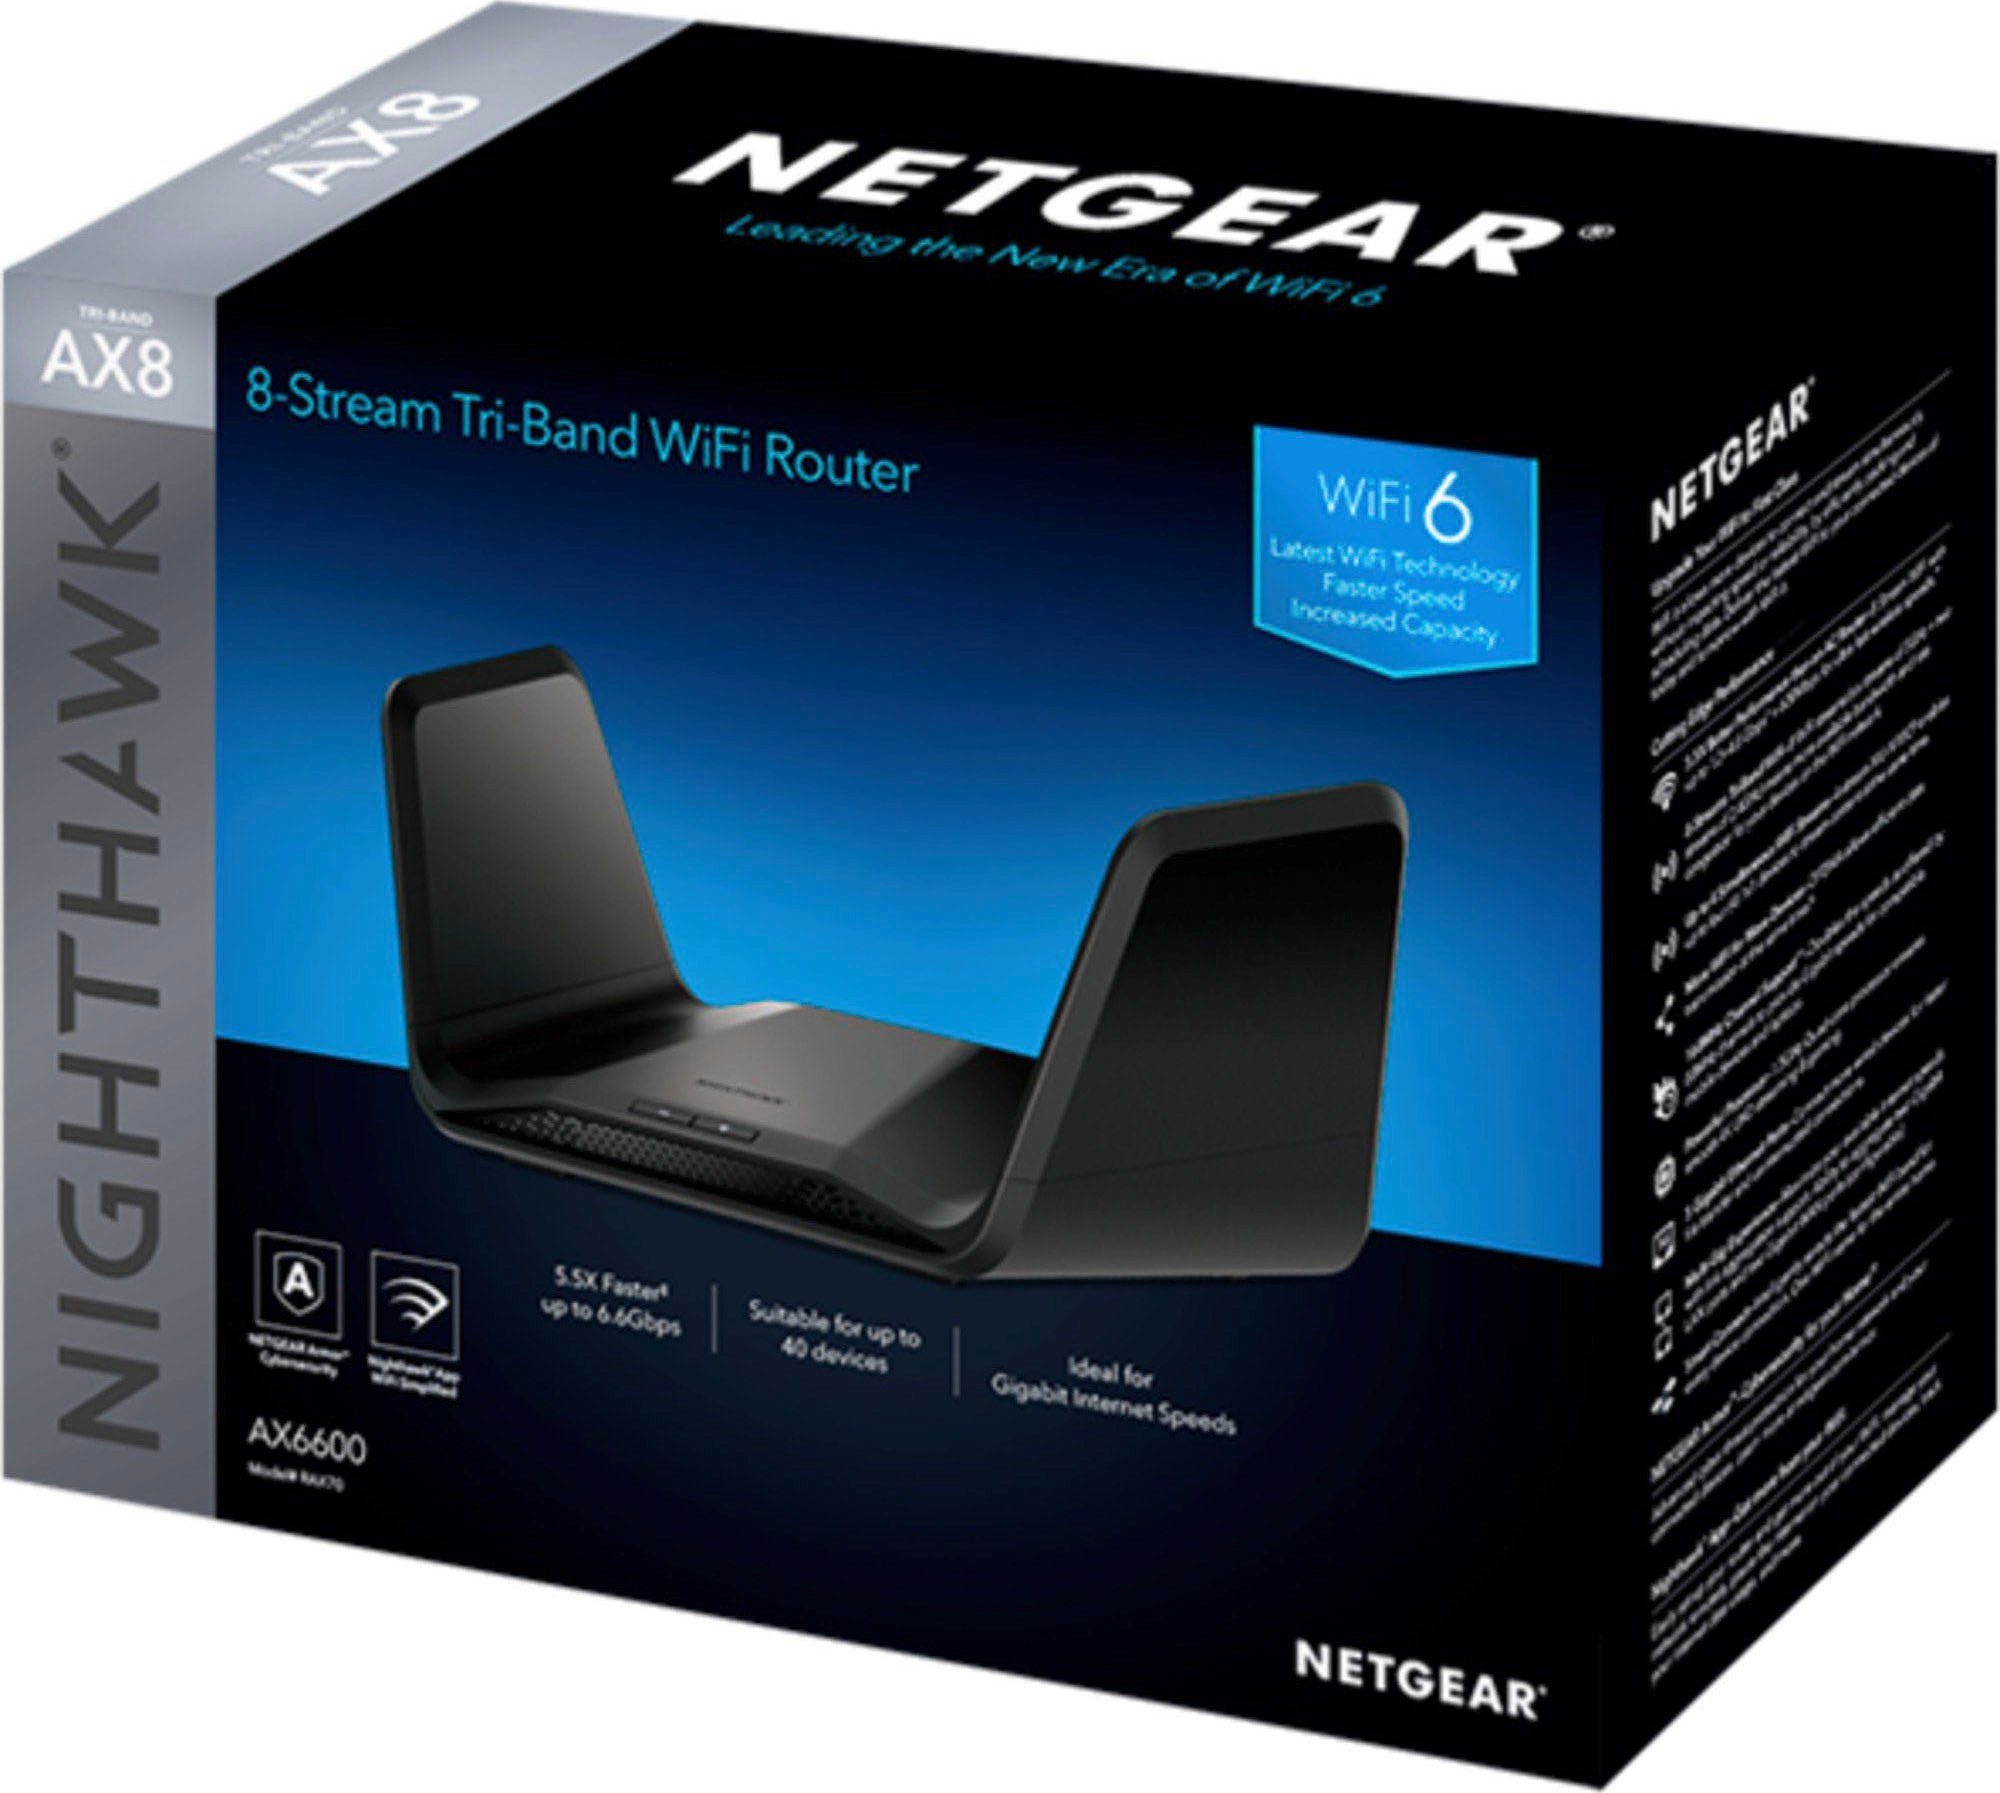 NETGEAR Nighthawk RAX70 WLAN-Router